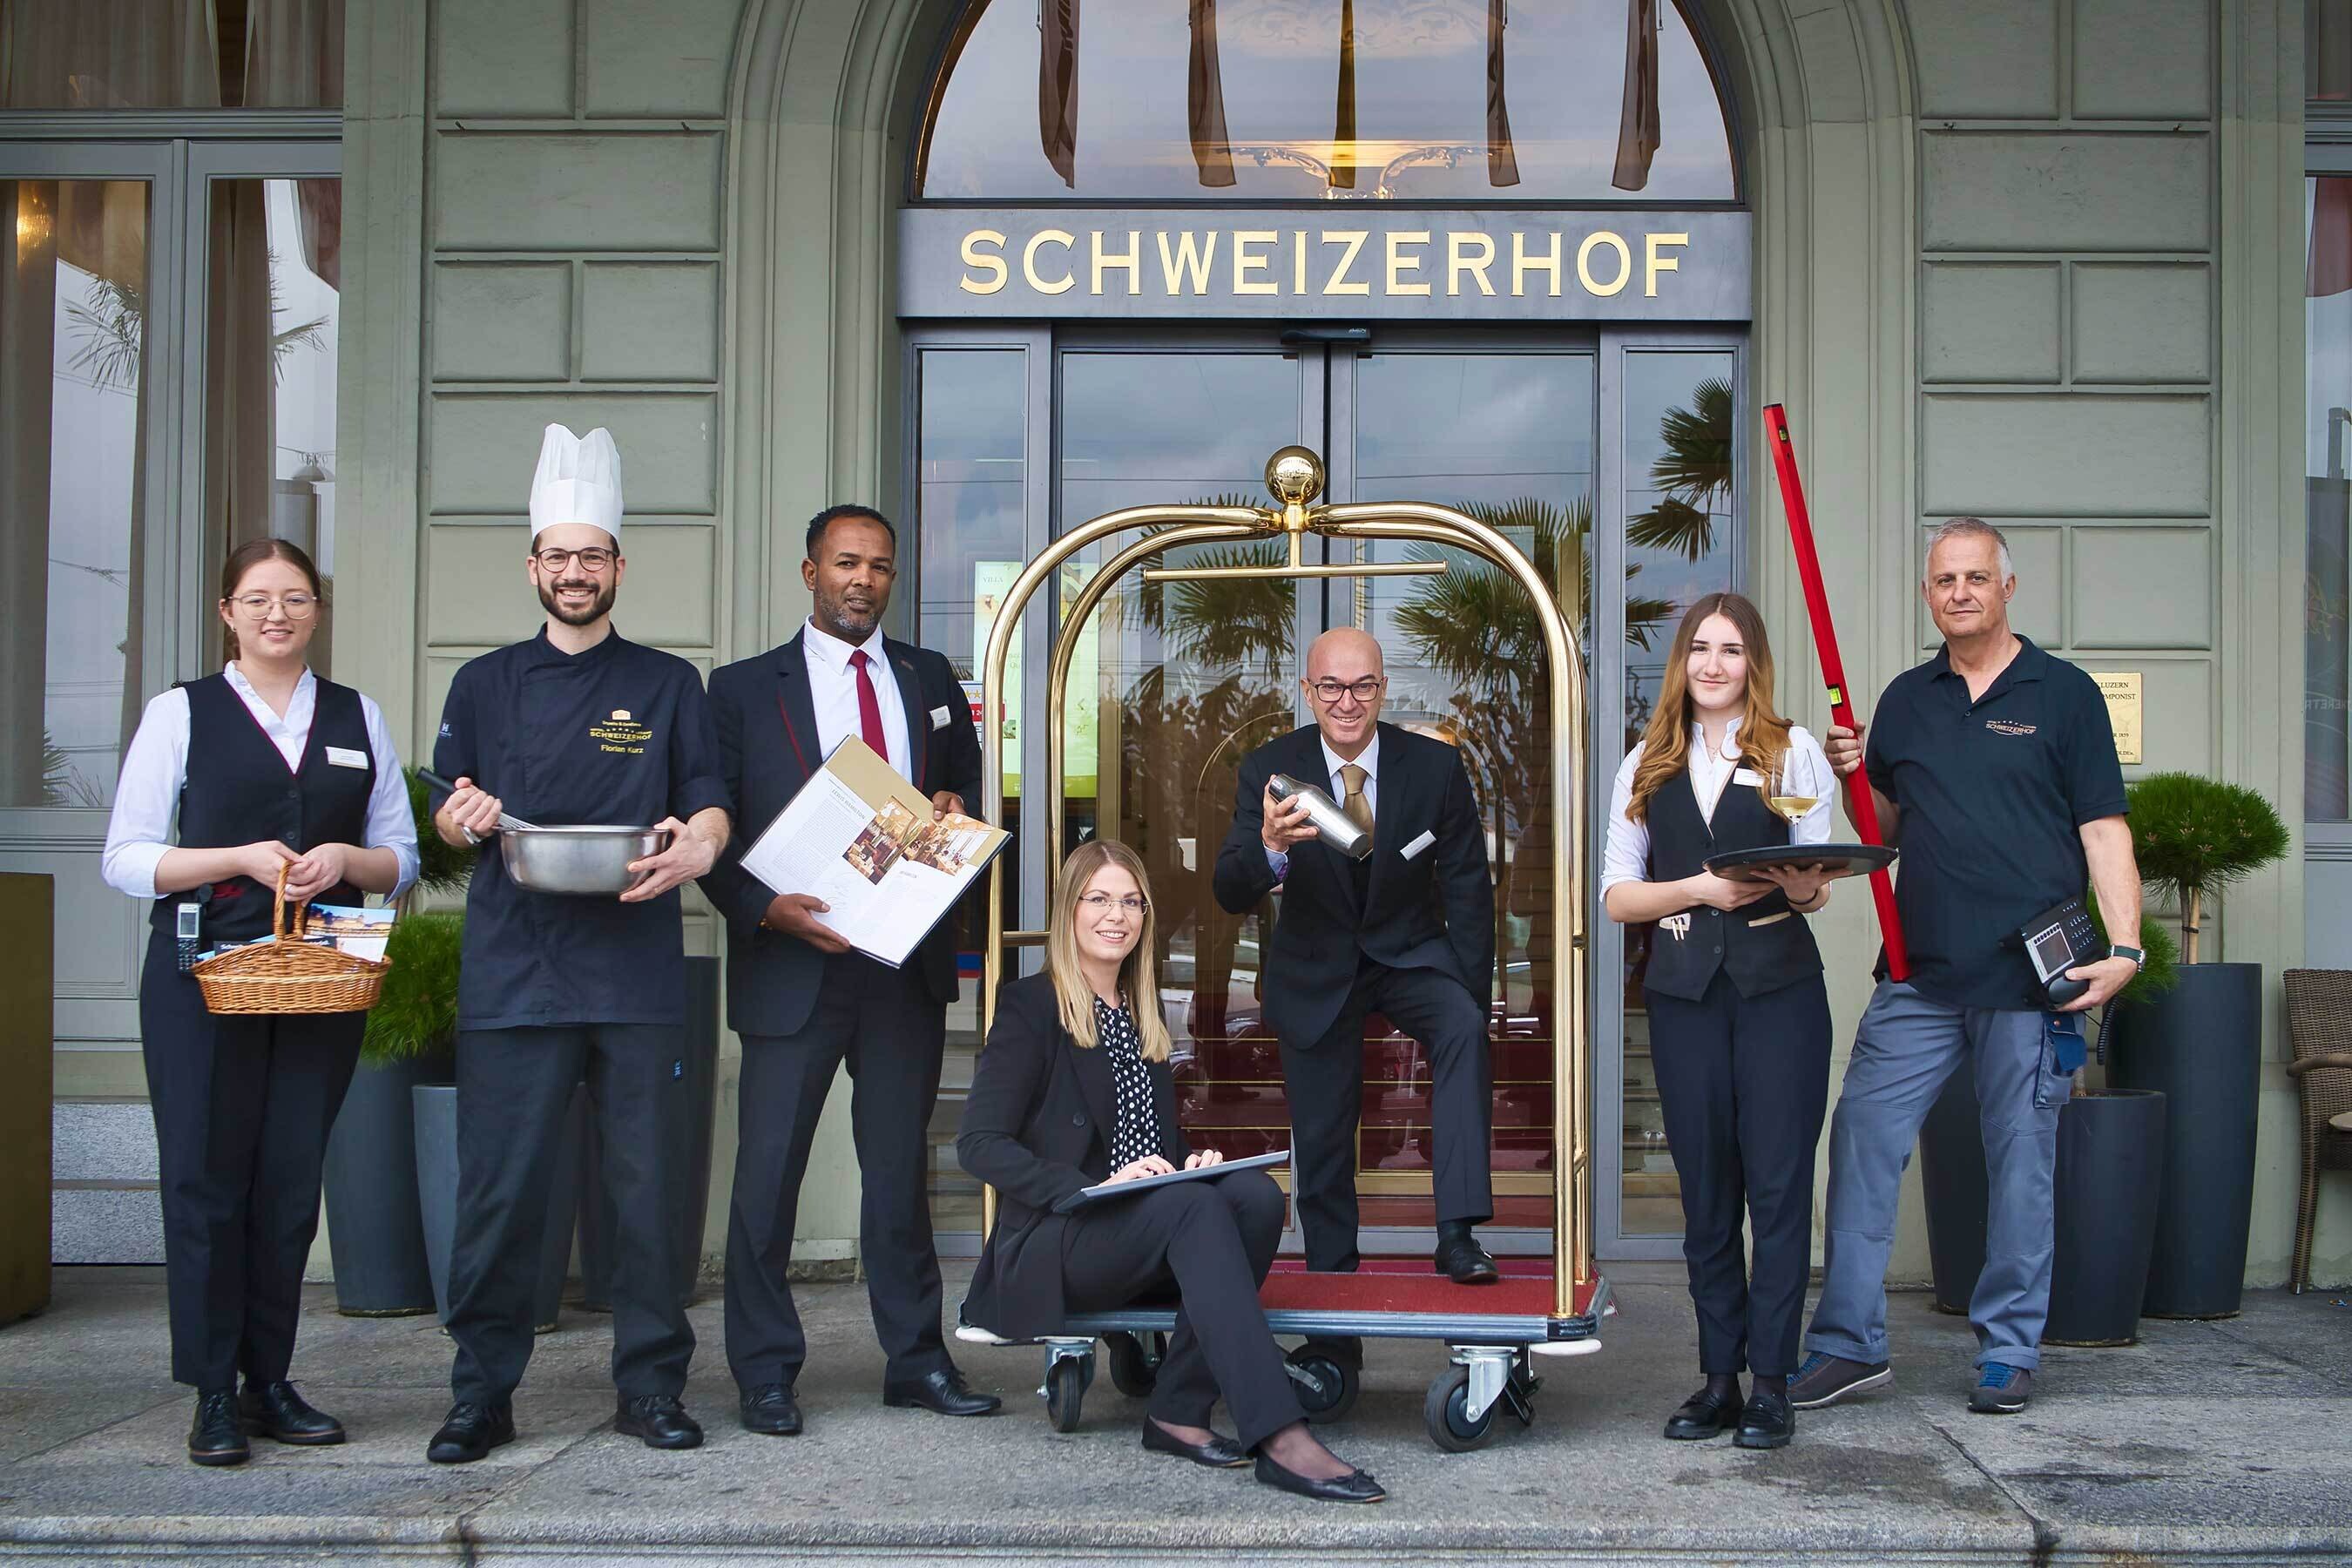 <p>Arbeiten im Hotel Schweizerhof, <br
/>im Herzen von Luzern</p>